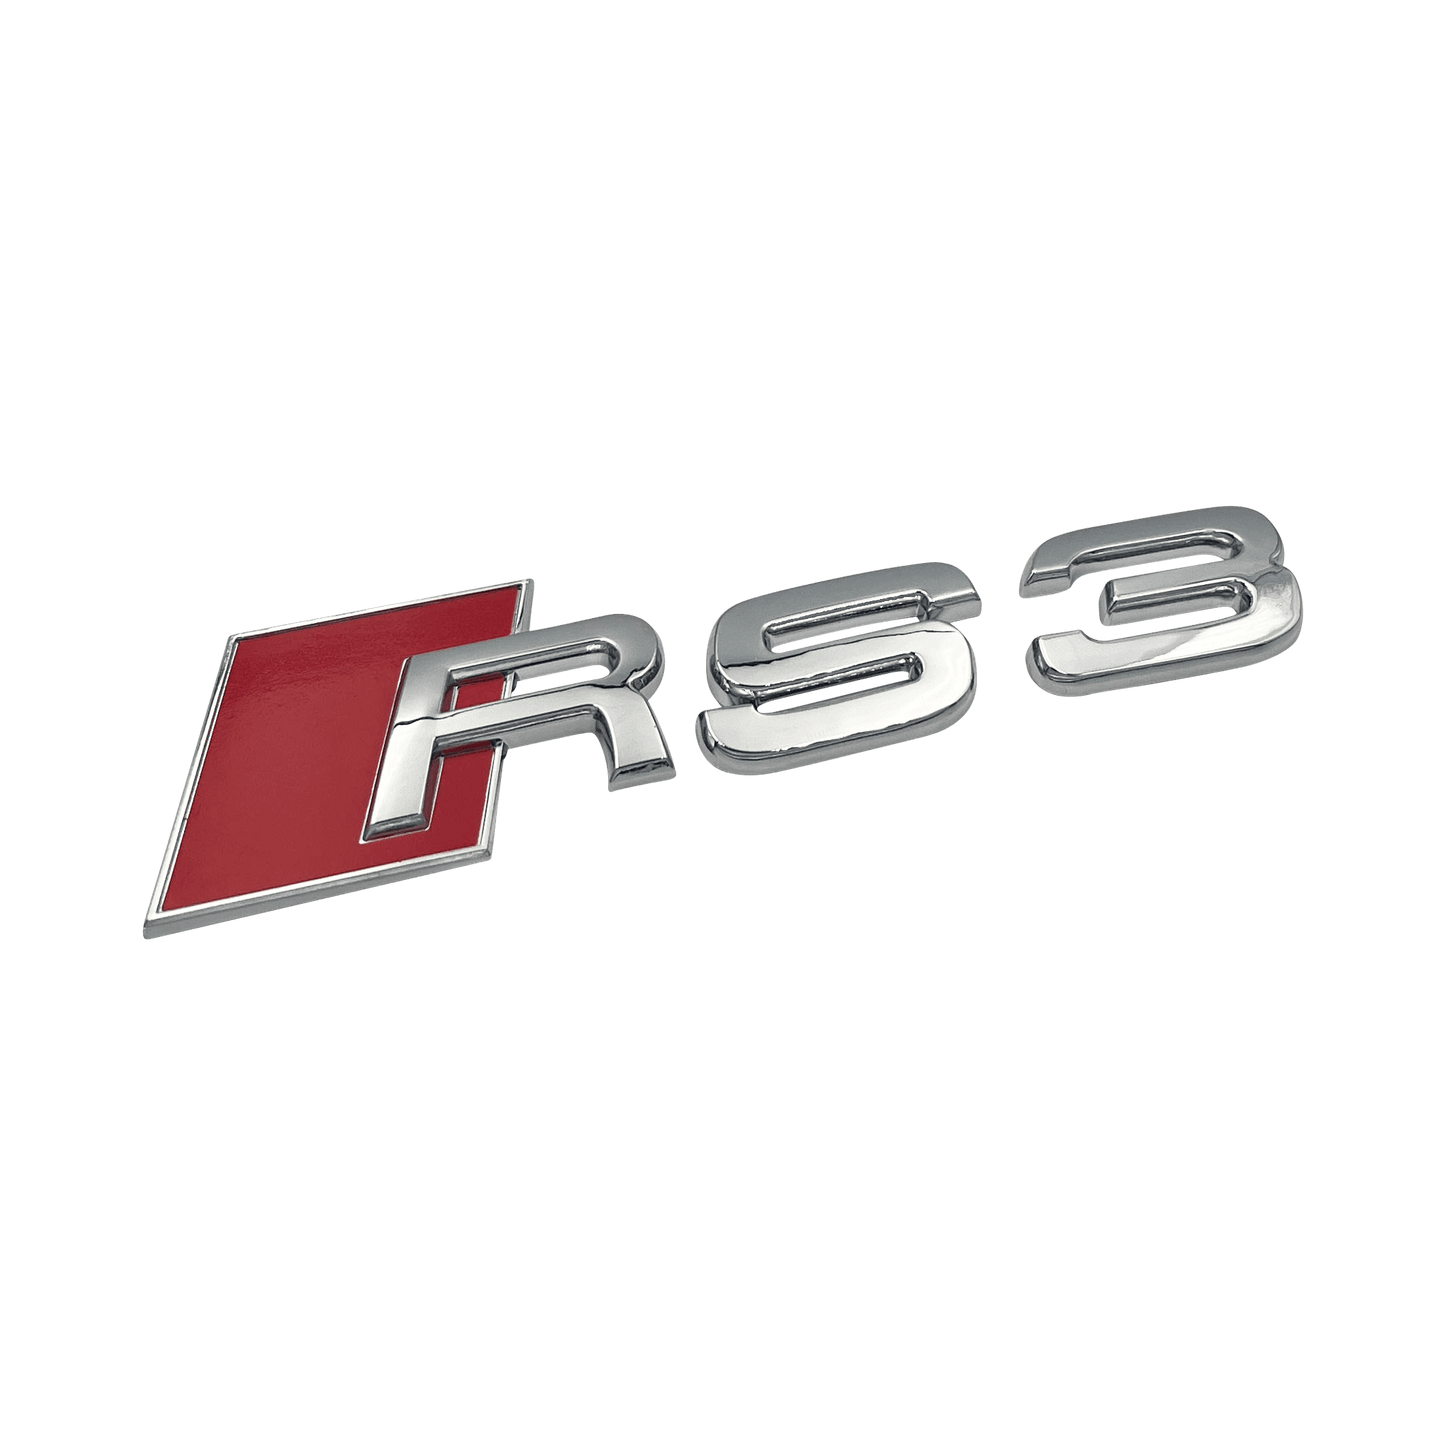 Chrome Audi RS3 Rear Emblem Badge